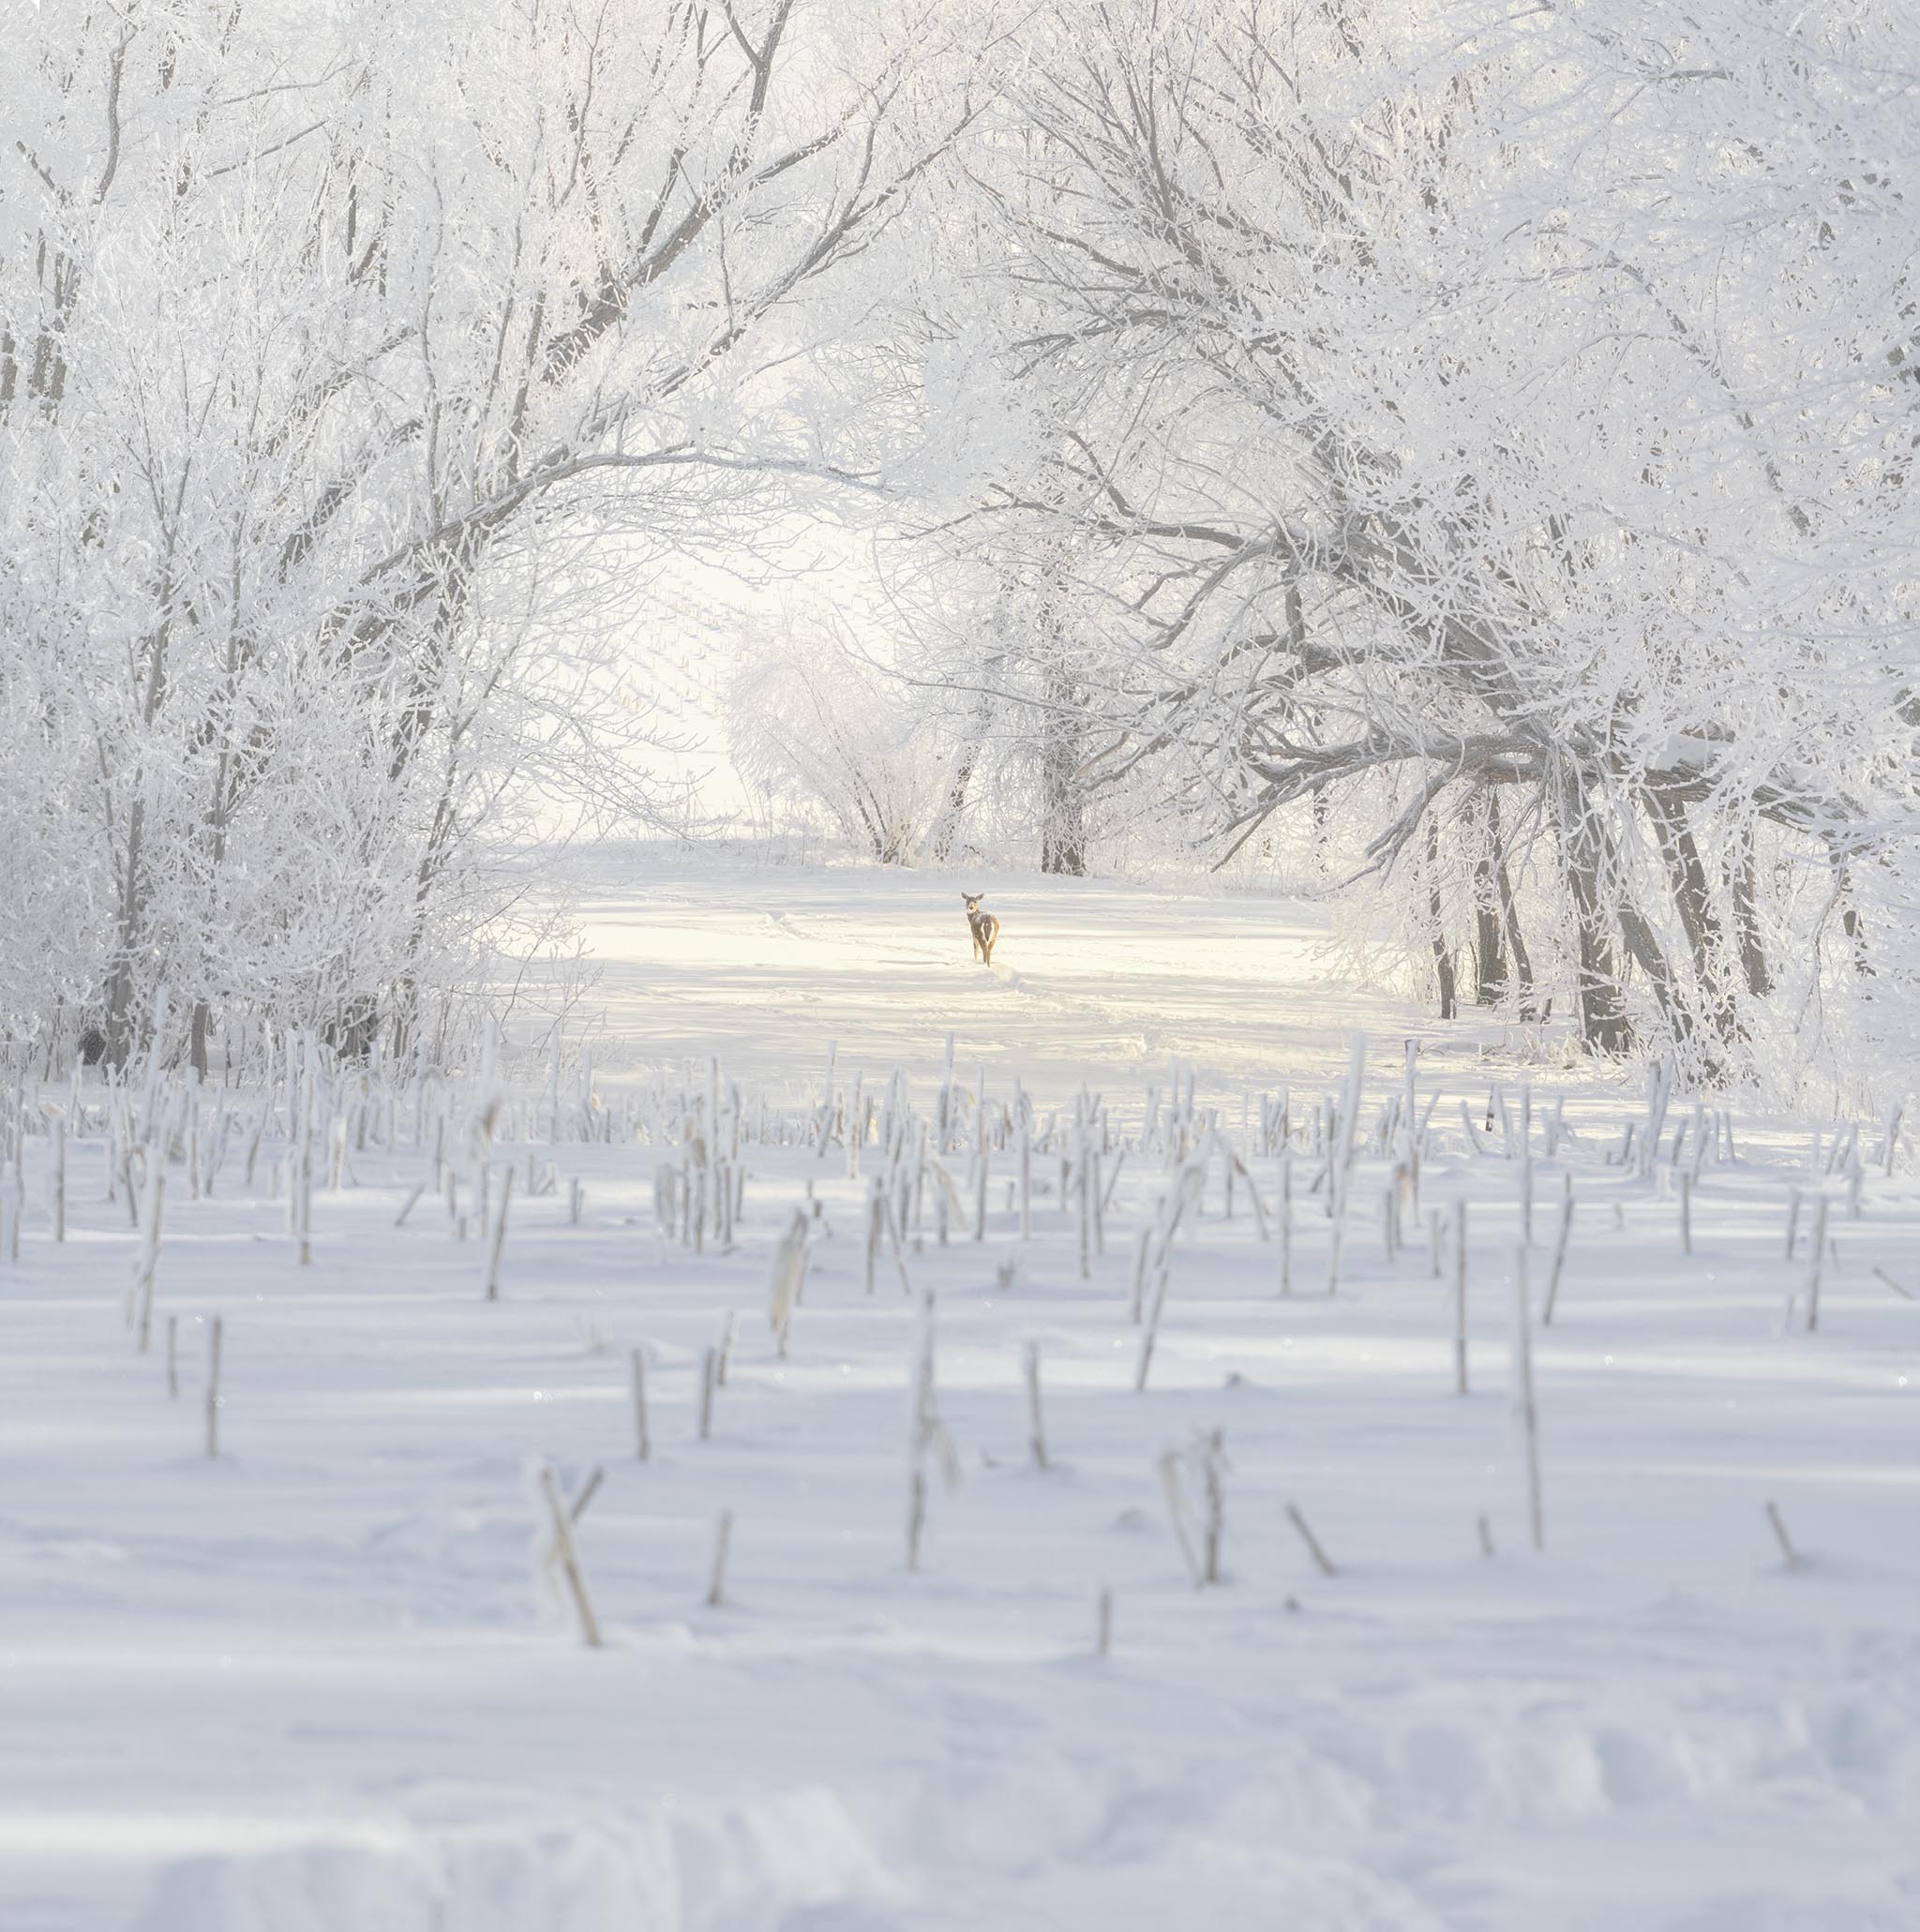 Deer standing among trees in winter